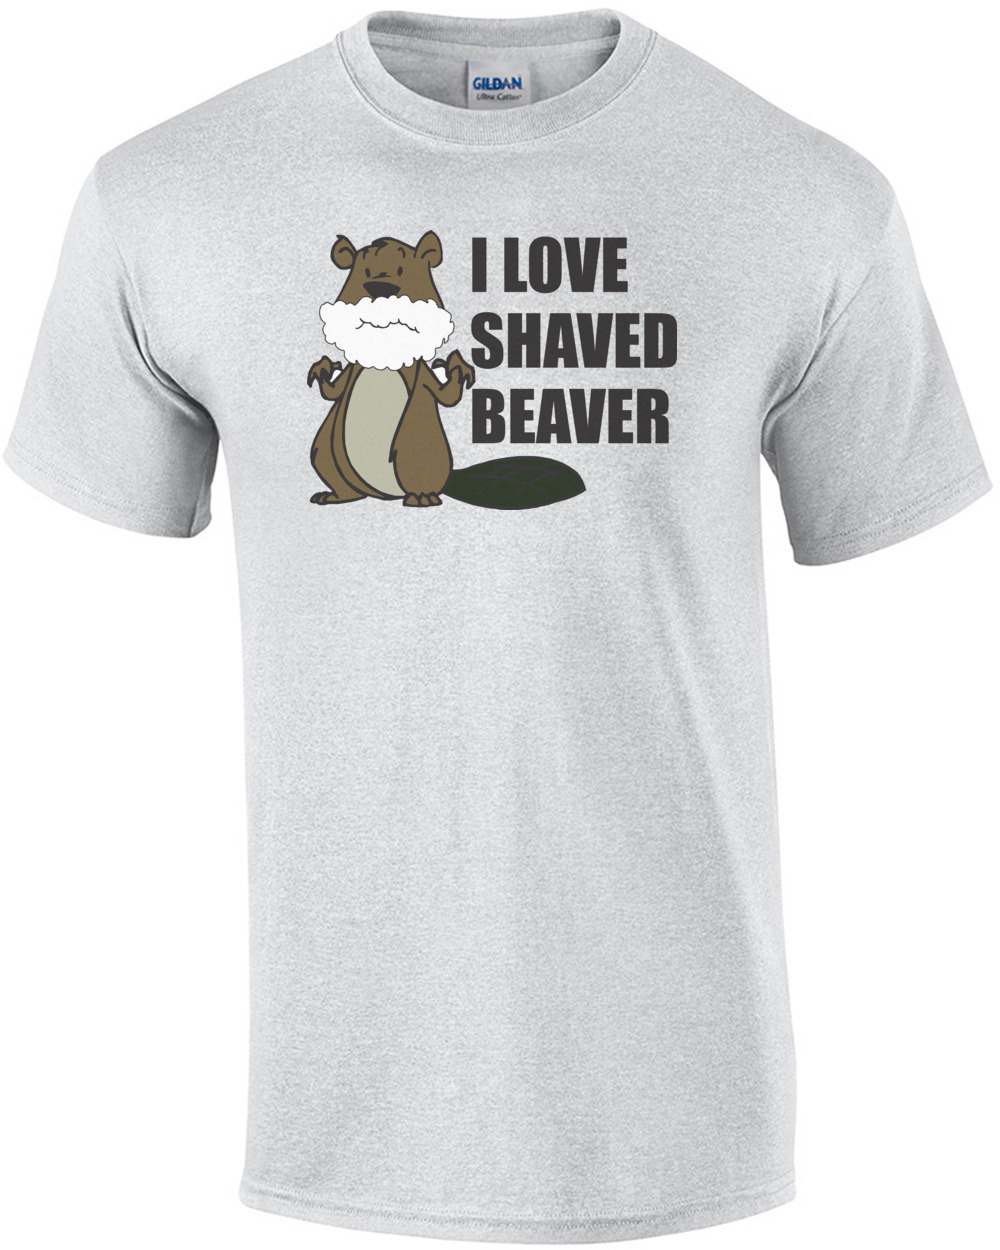 I Loved Shaved Beaver T-shirt.